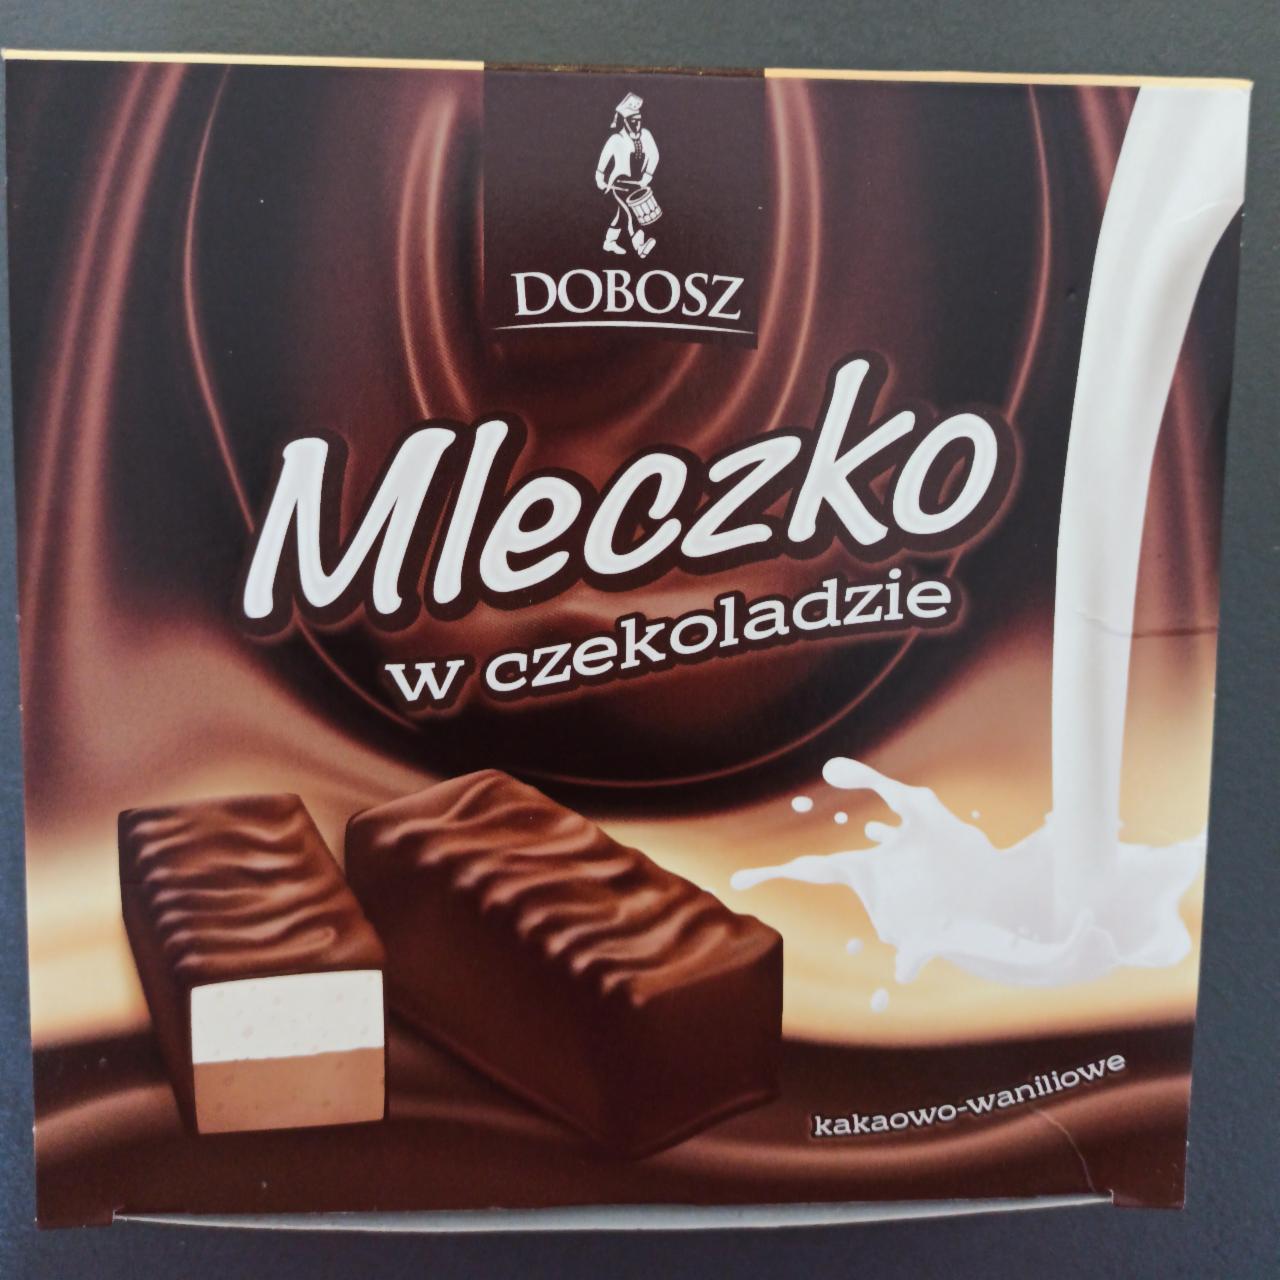 Fotografie - Mleczko w czekoladzie kakaowo-waniliowe Dobosz